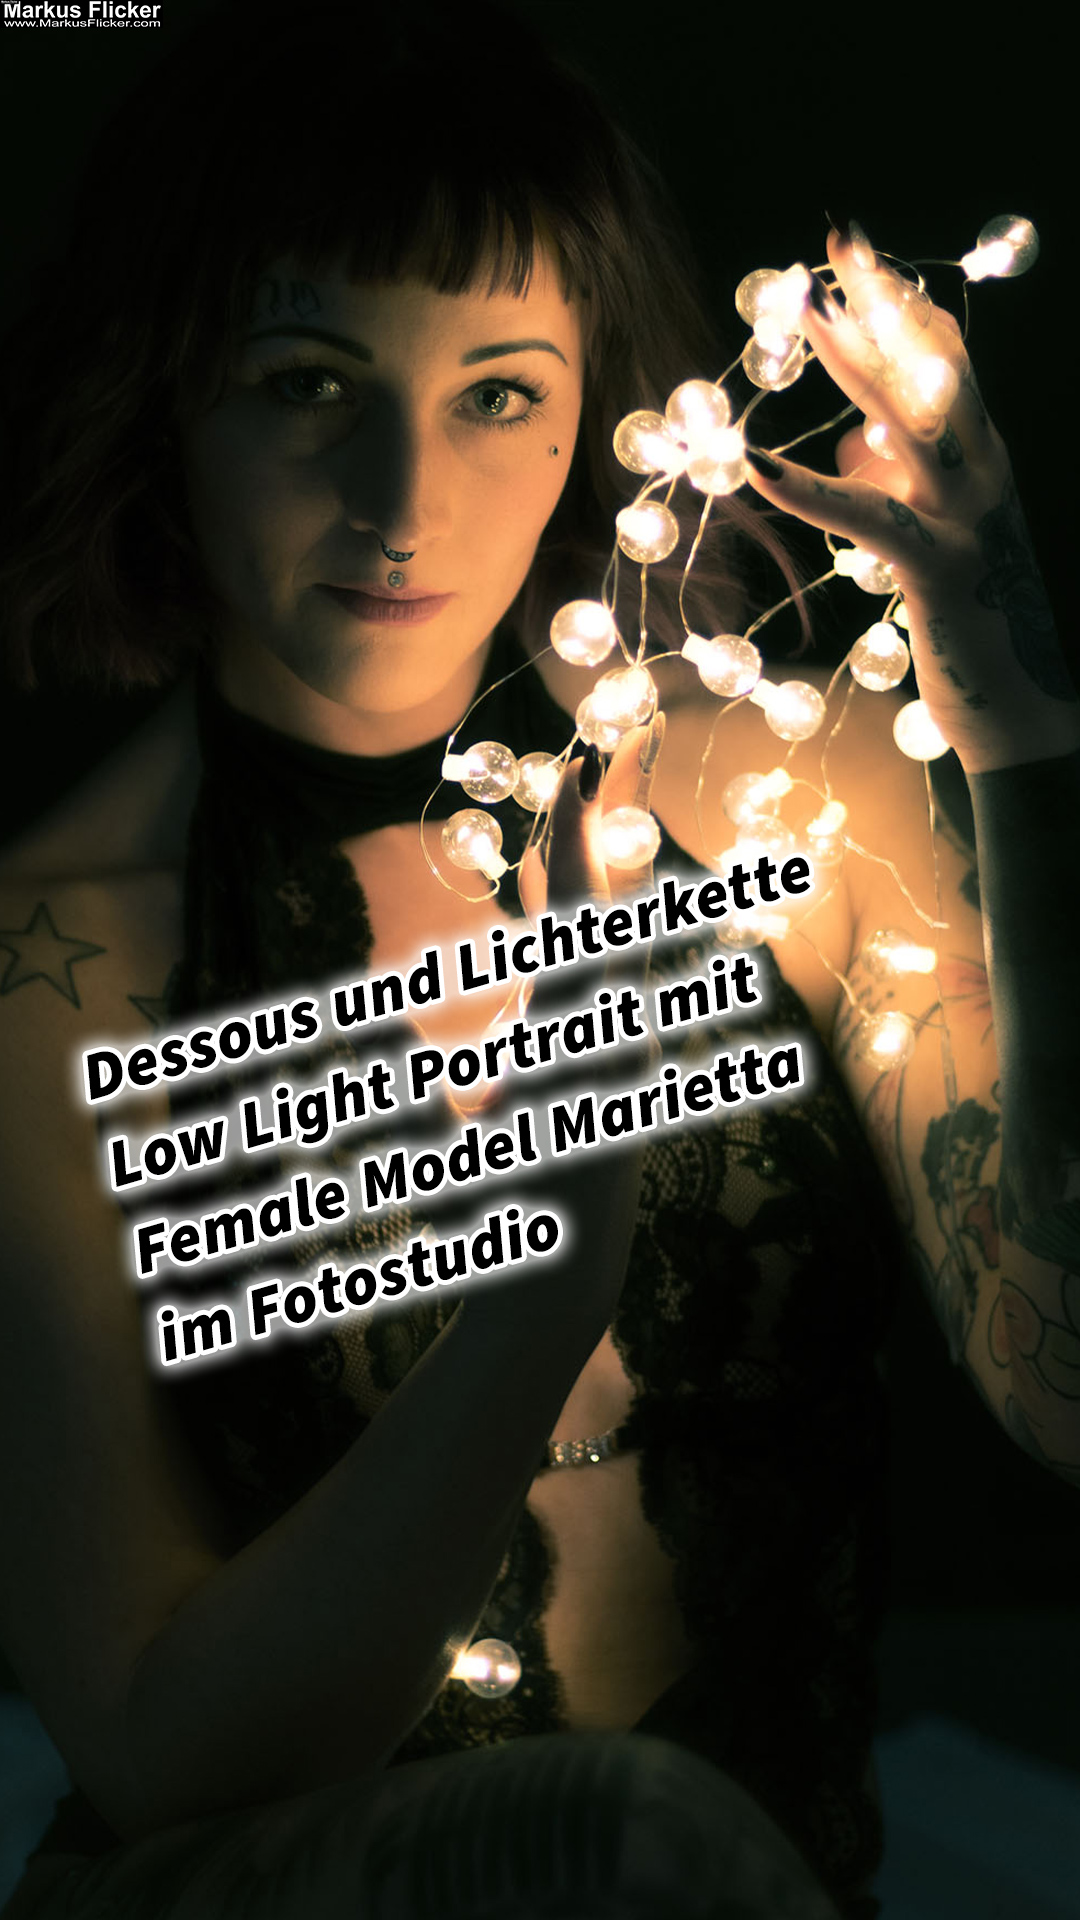 Dessous und Lichterkette Low Light Portrait mit Female Model Marietta im Fotostudio